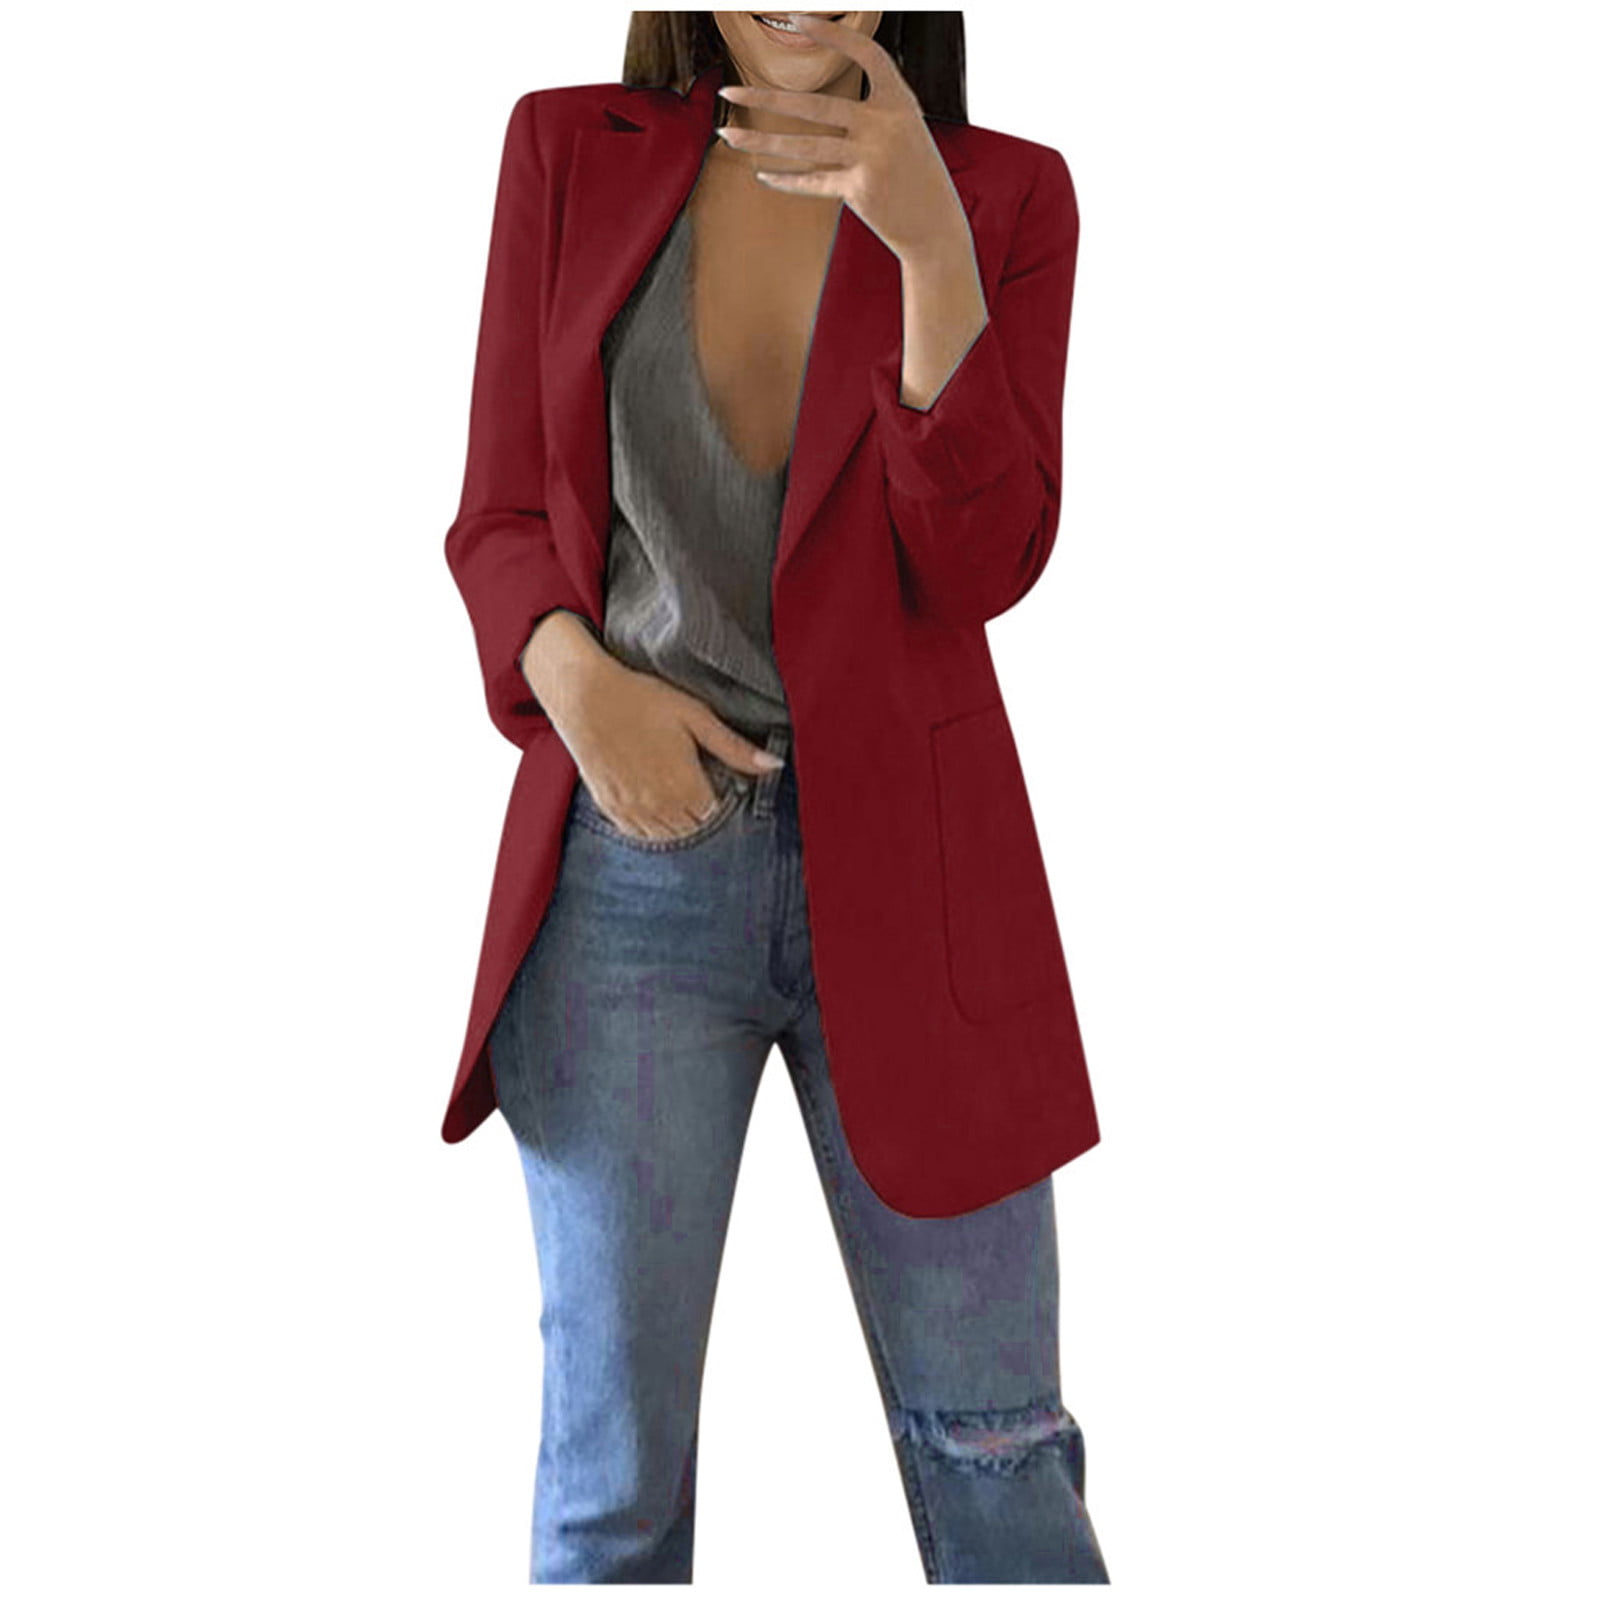 FLYCEHN Women Open Blazer Front Pocket Long Sleeve Work Office Cardigan Jacket